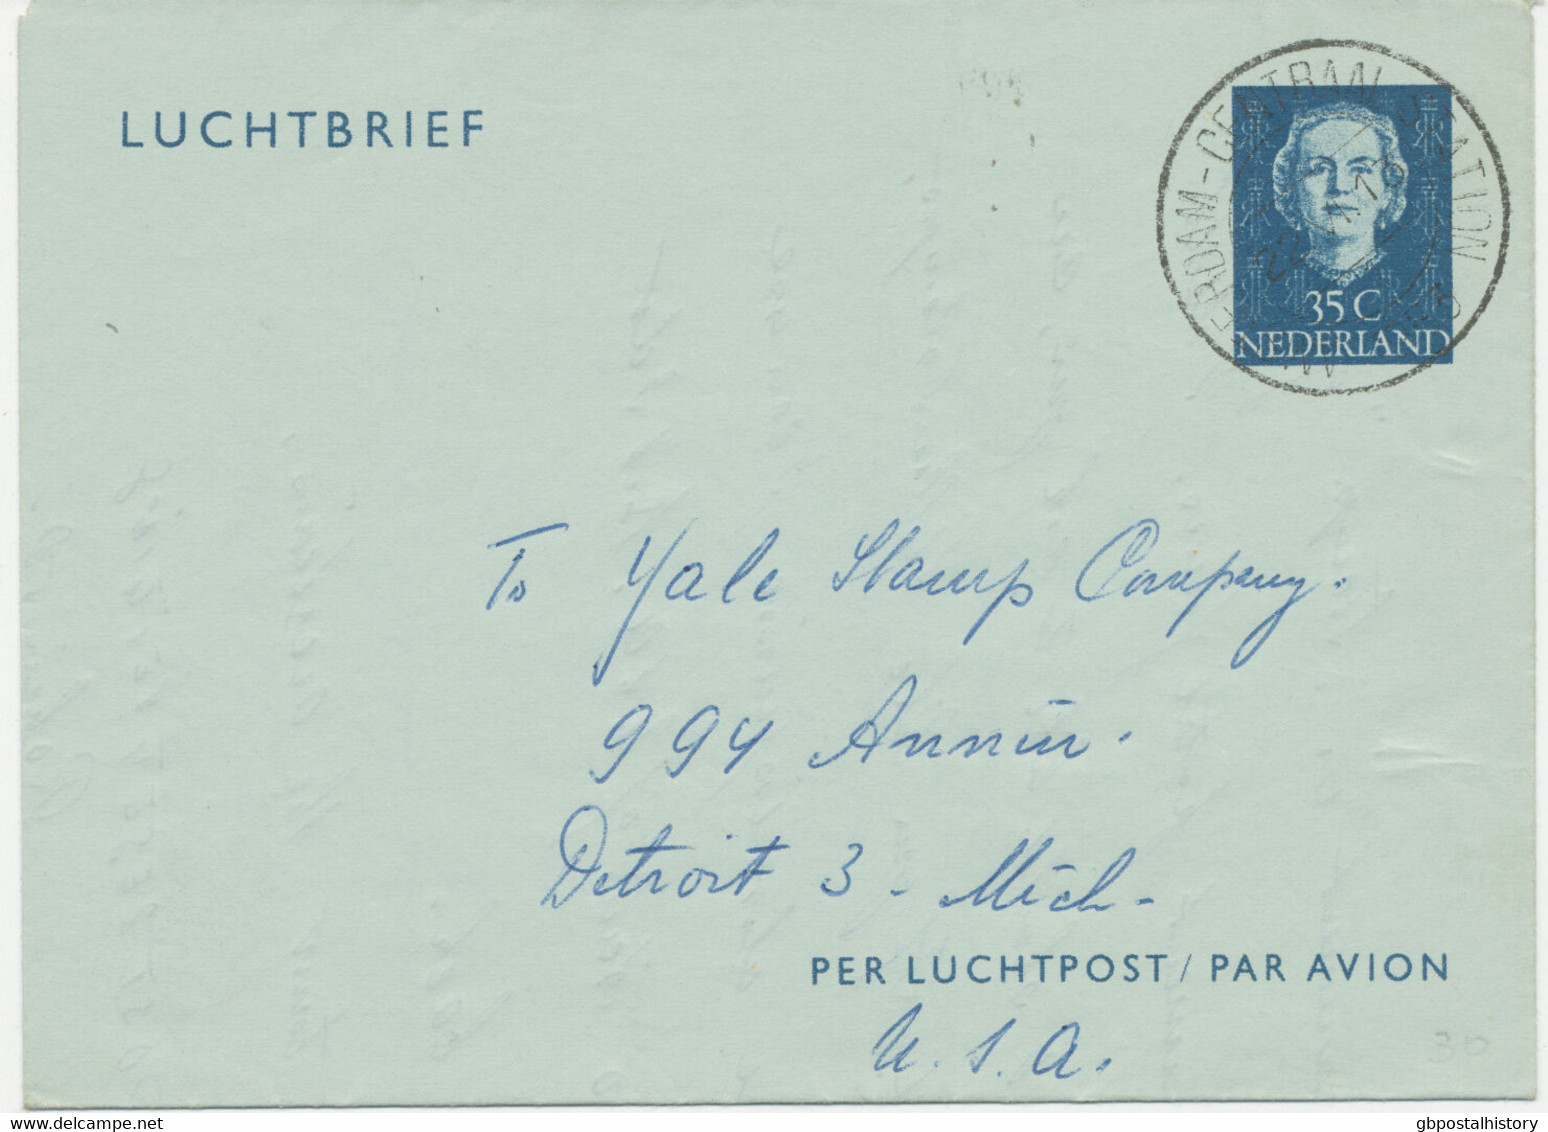 NIEDERLANDE 1953 Queen Juliana 35C Blue Air Letter AMSTERDAM – DETROIT, Michigan - Luftpost